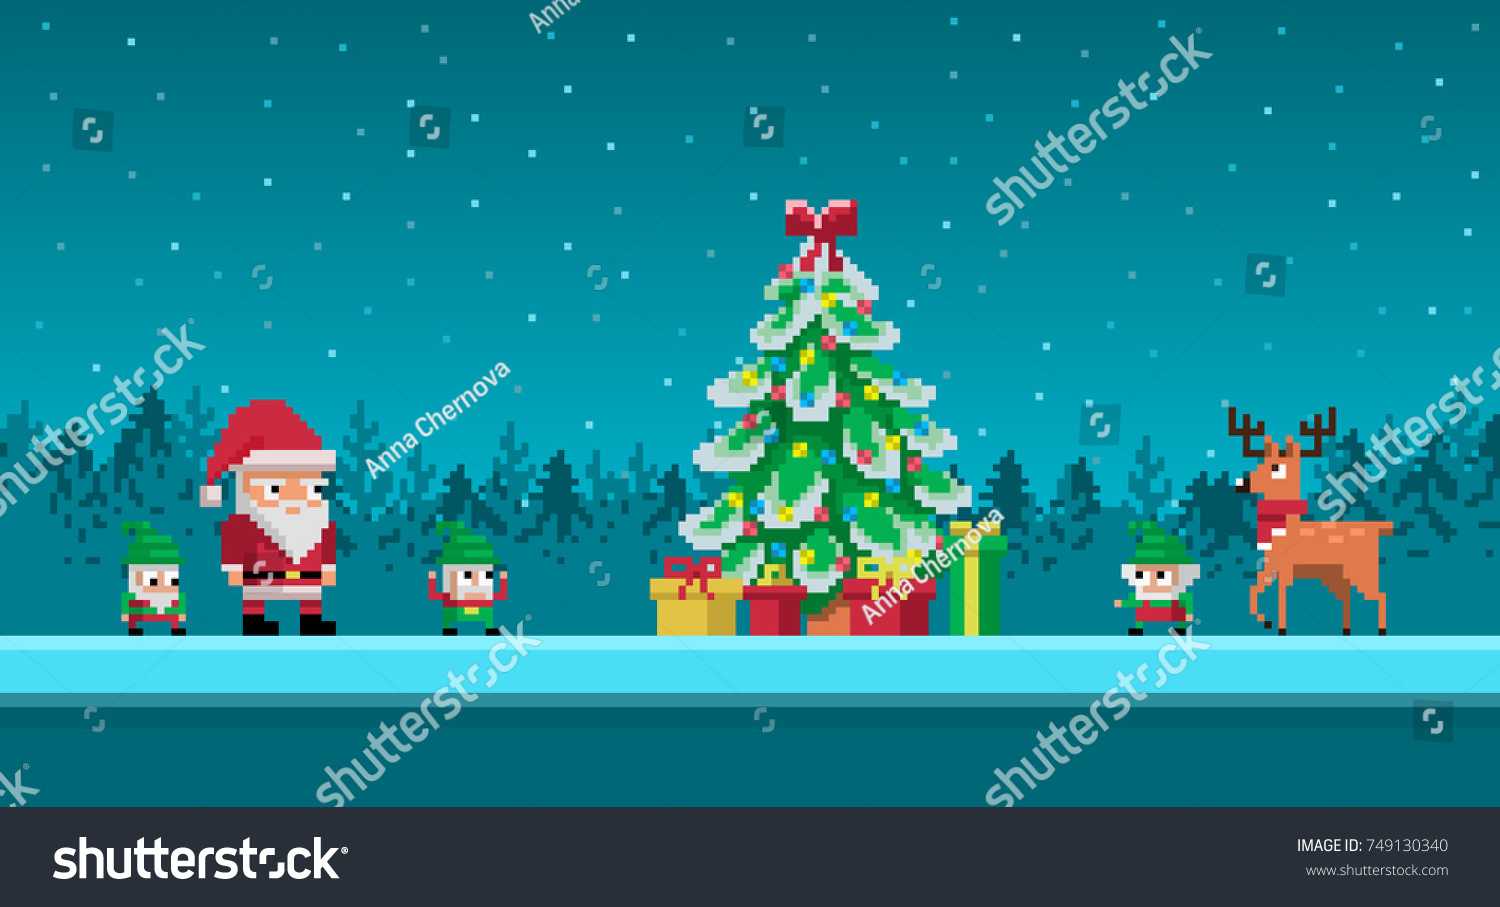 Image Vectorielle De Stock De Pixel Art Scene Avec Santa Claus 749130340